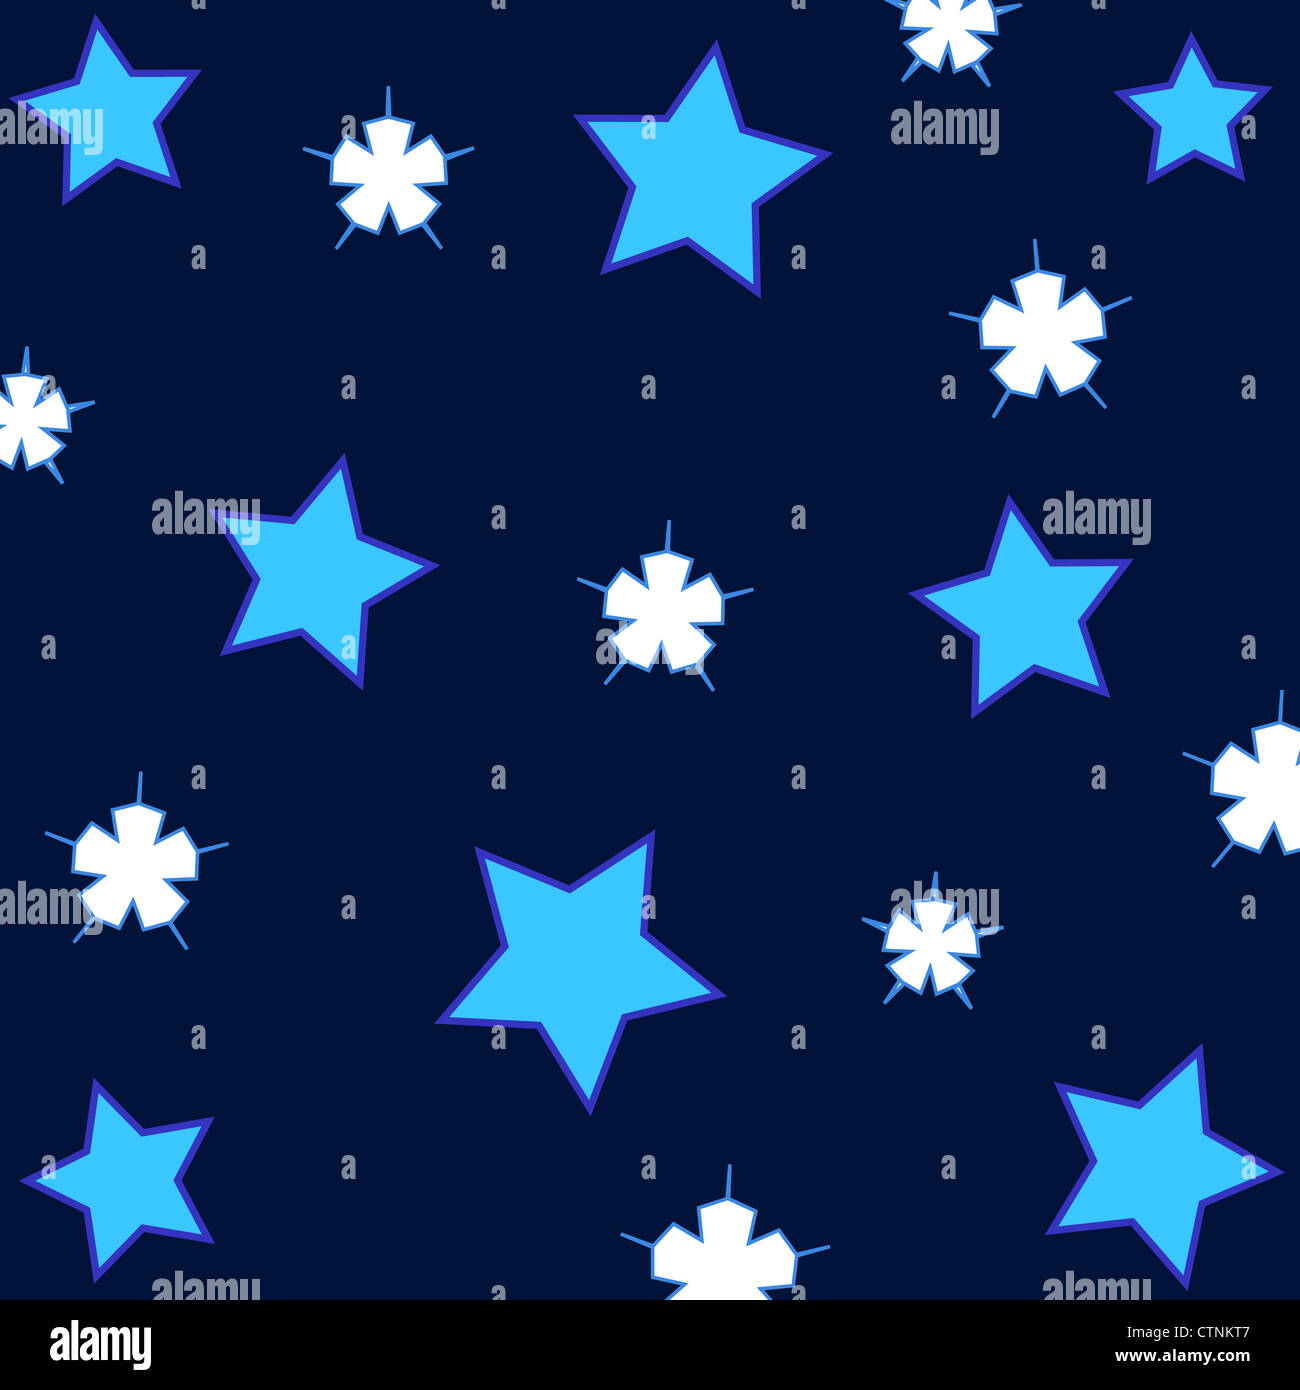 Seamless blue stars pattern Stock Photo